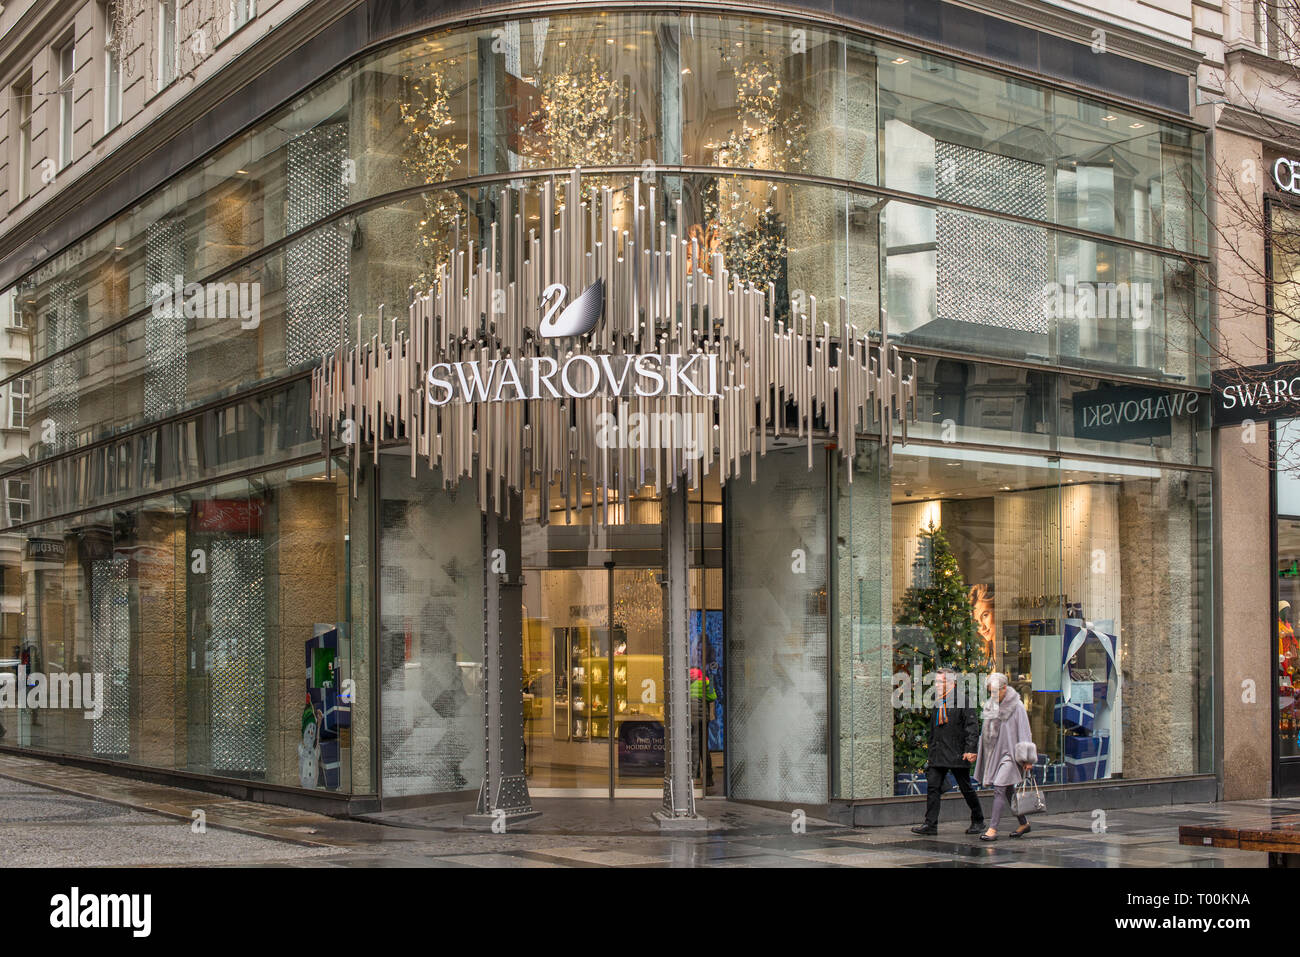 Swarovski jewelry shop on Kartner street in Vienna, Austria Stock Photo -  Alamy